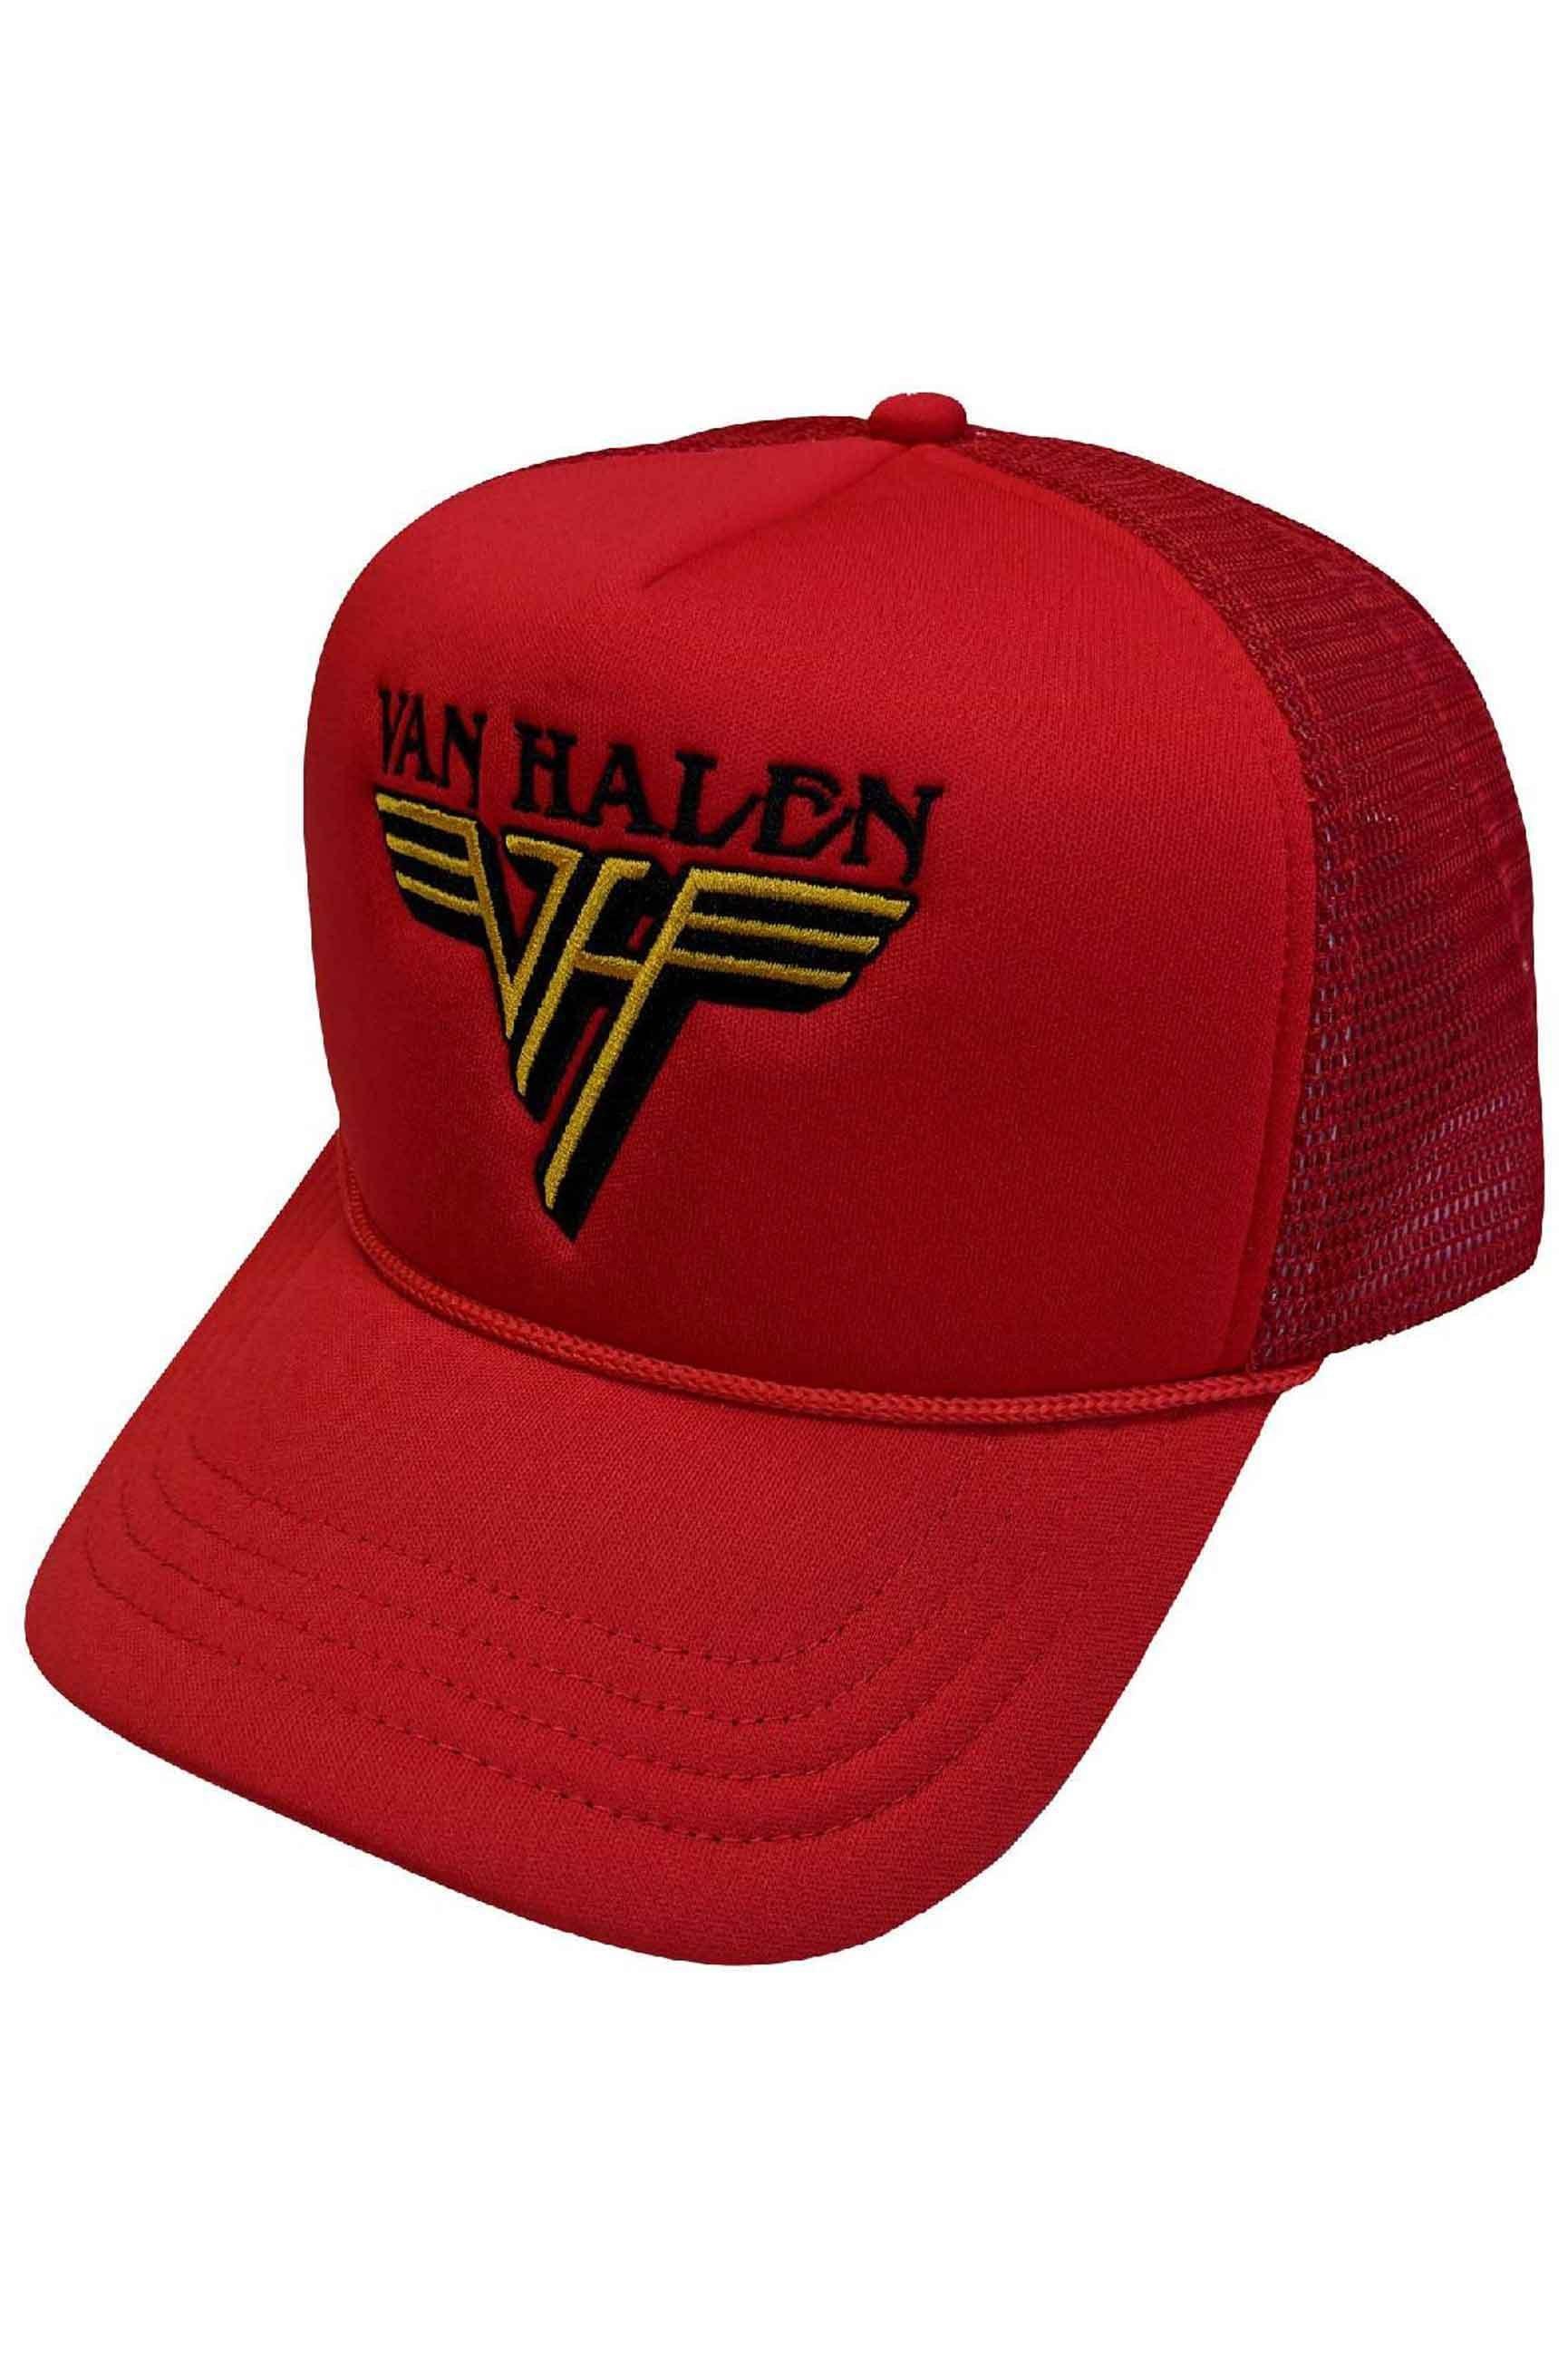 Бейсбольная кепка Trucker с текстовым ремешком и логотипом Van Halen, красный guitar hero van halen ps3 английский язык